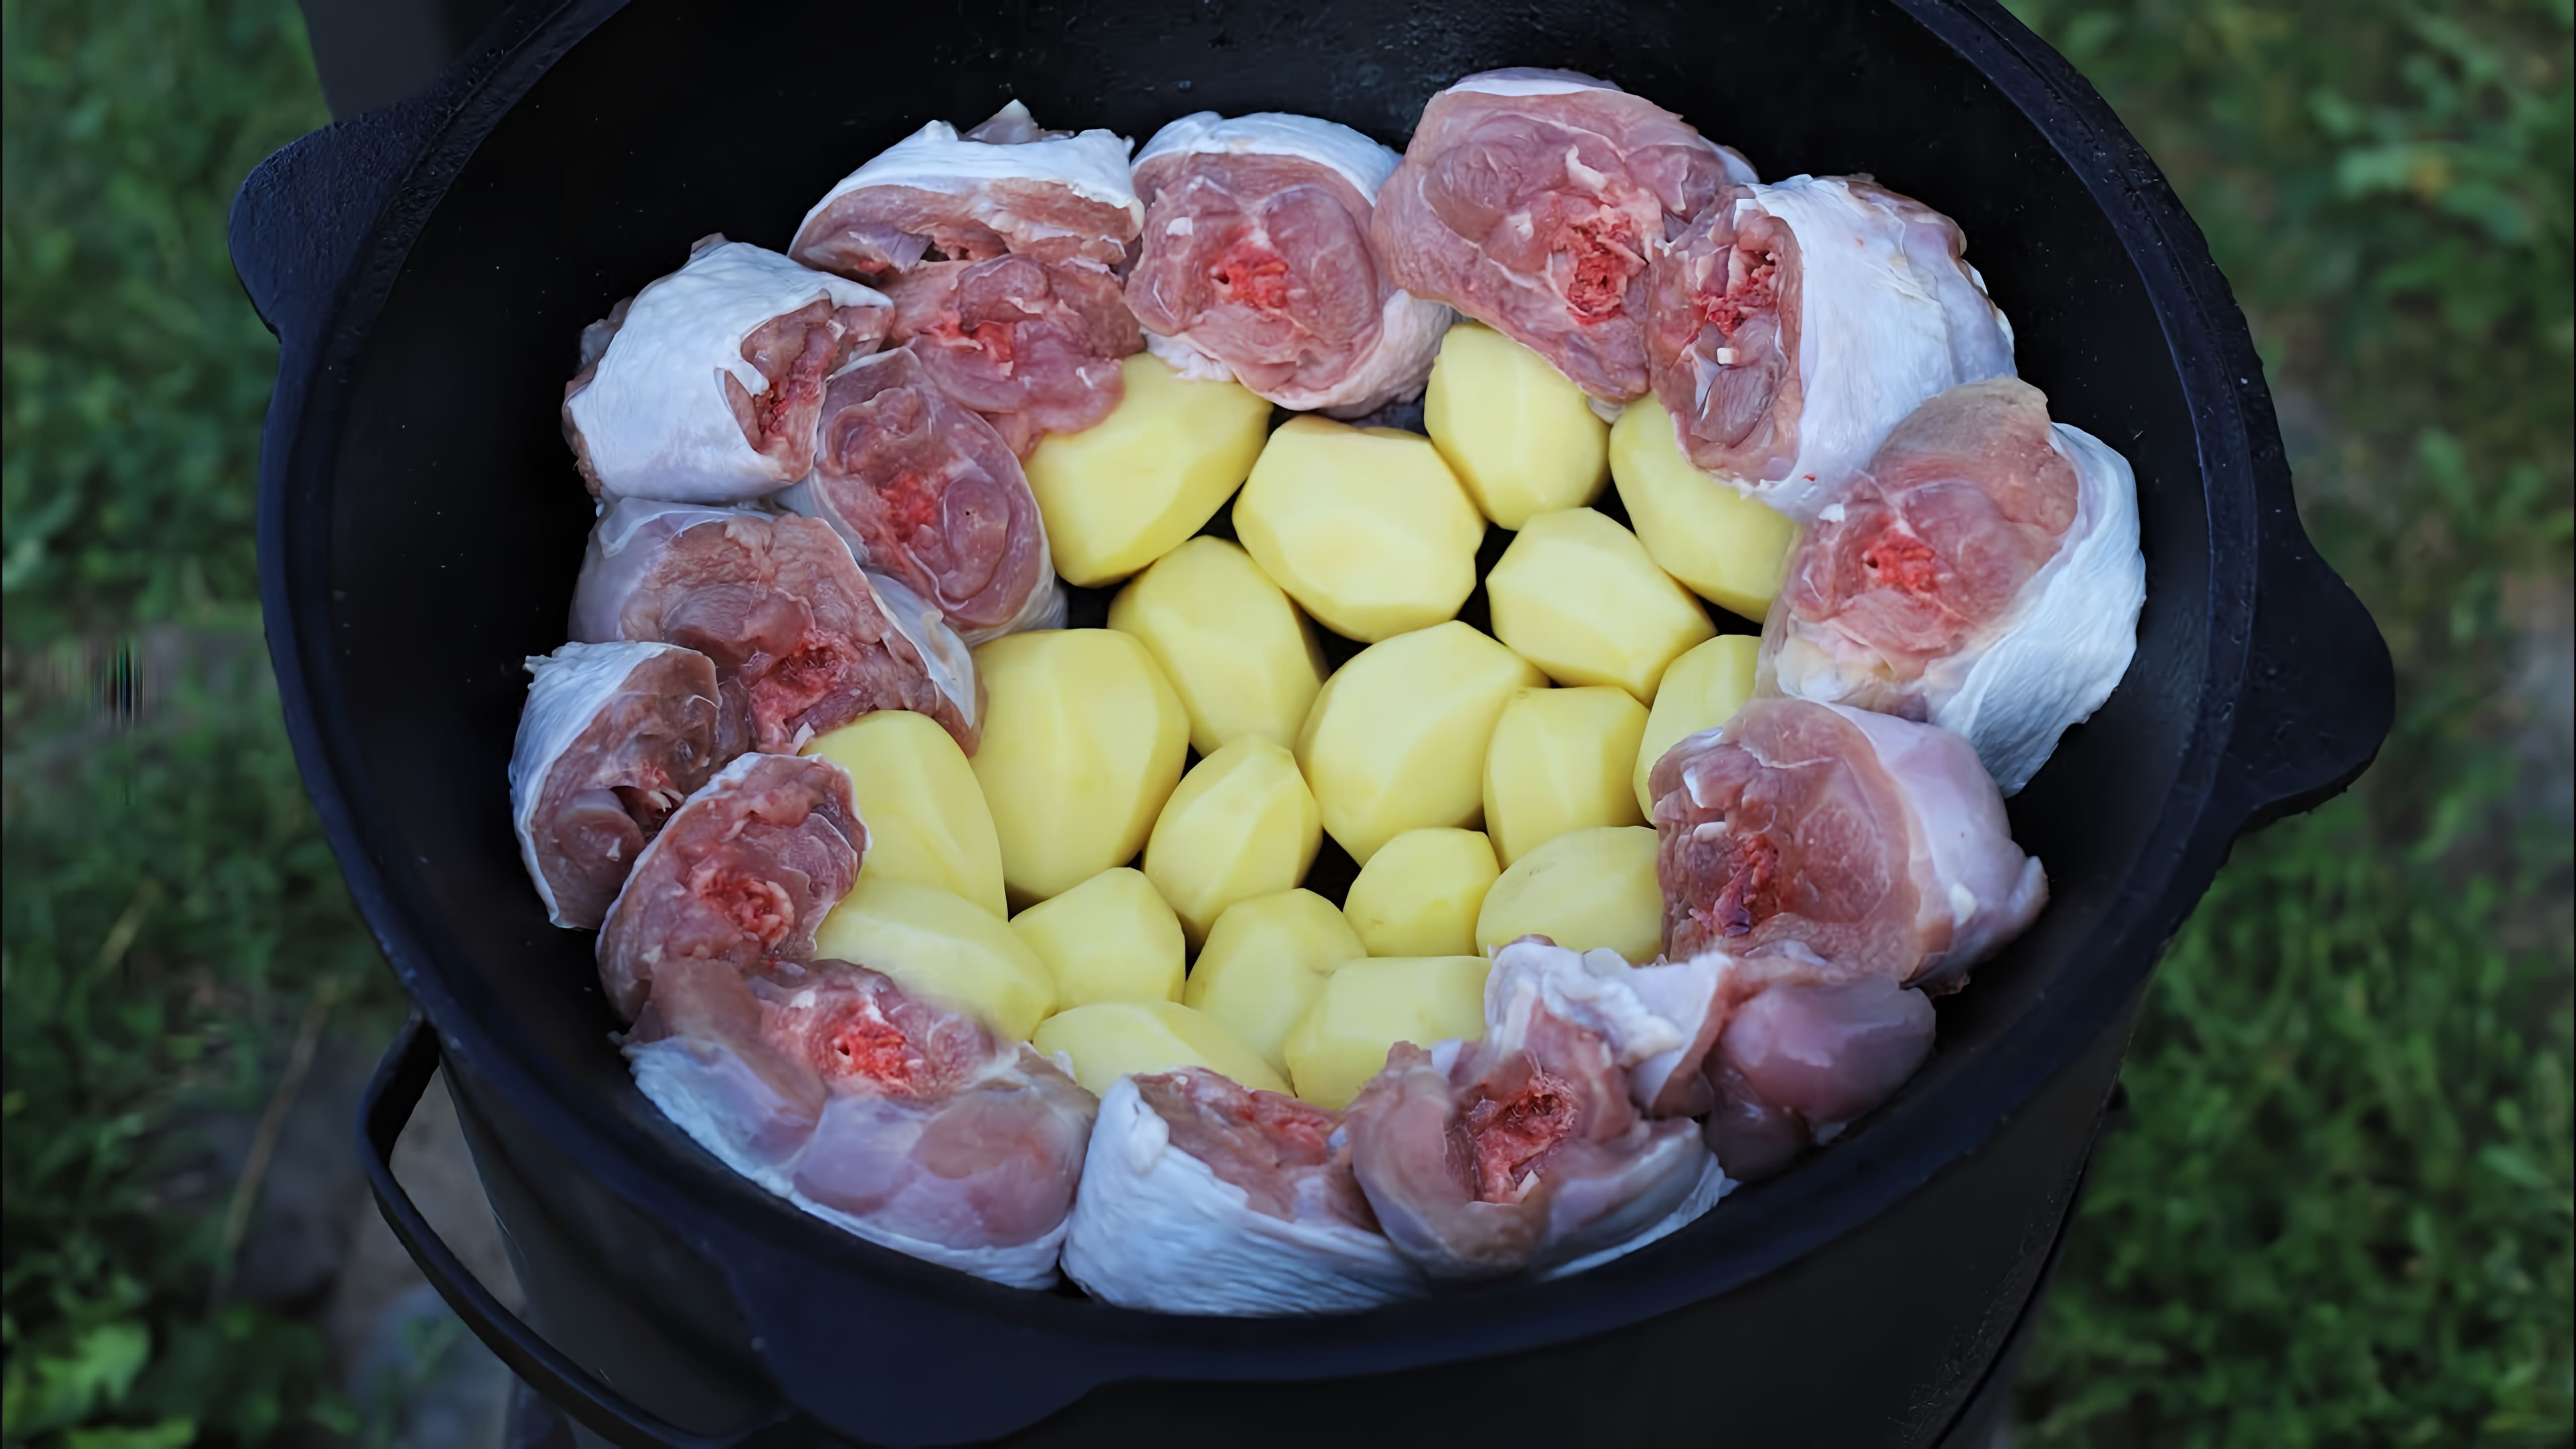 В этом видео демонстрируется процесс приготовления блюда "Казан-кaбаб" с мясом индейки